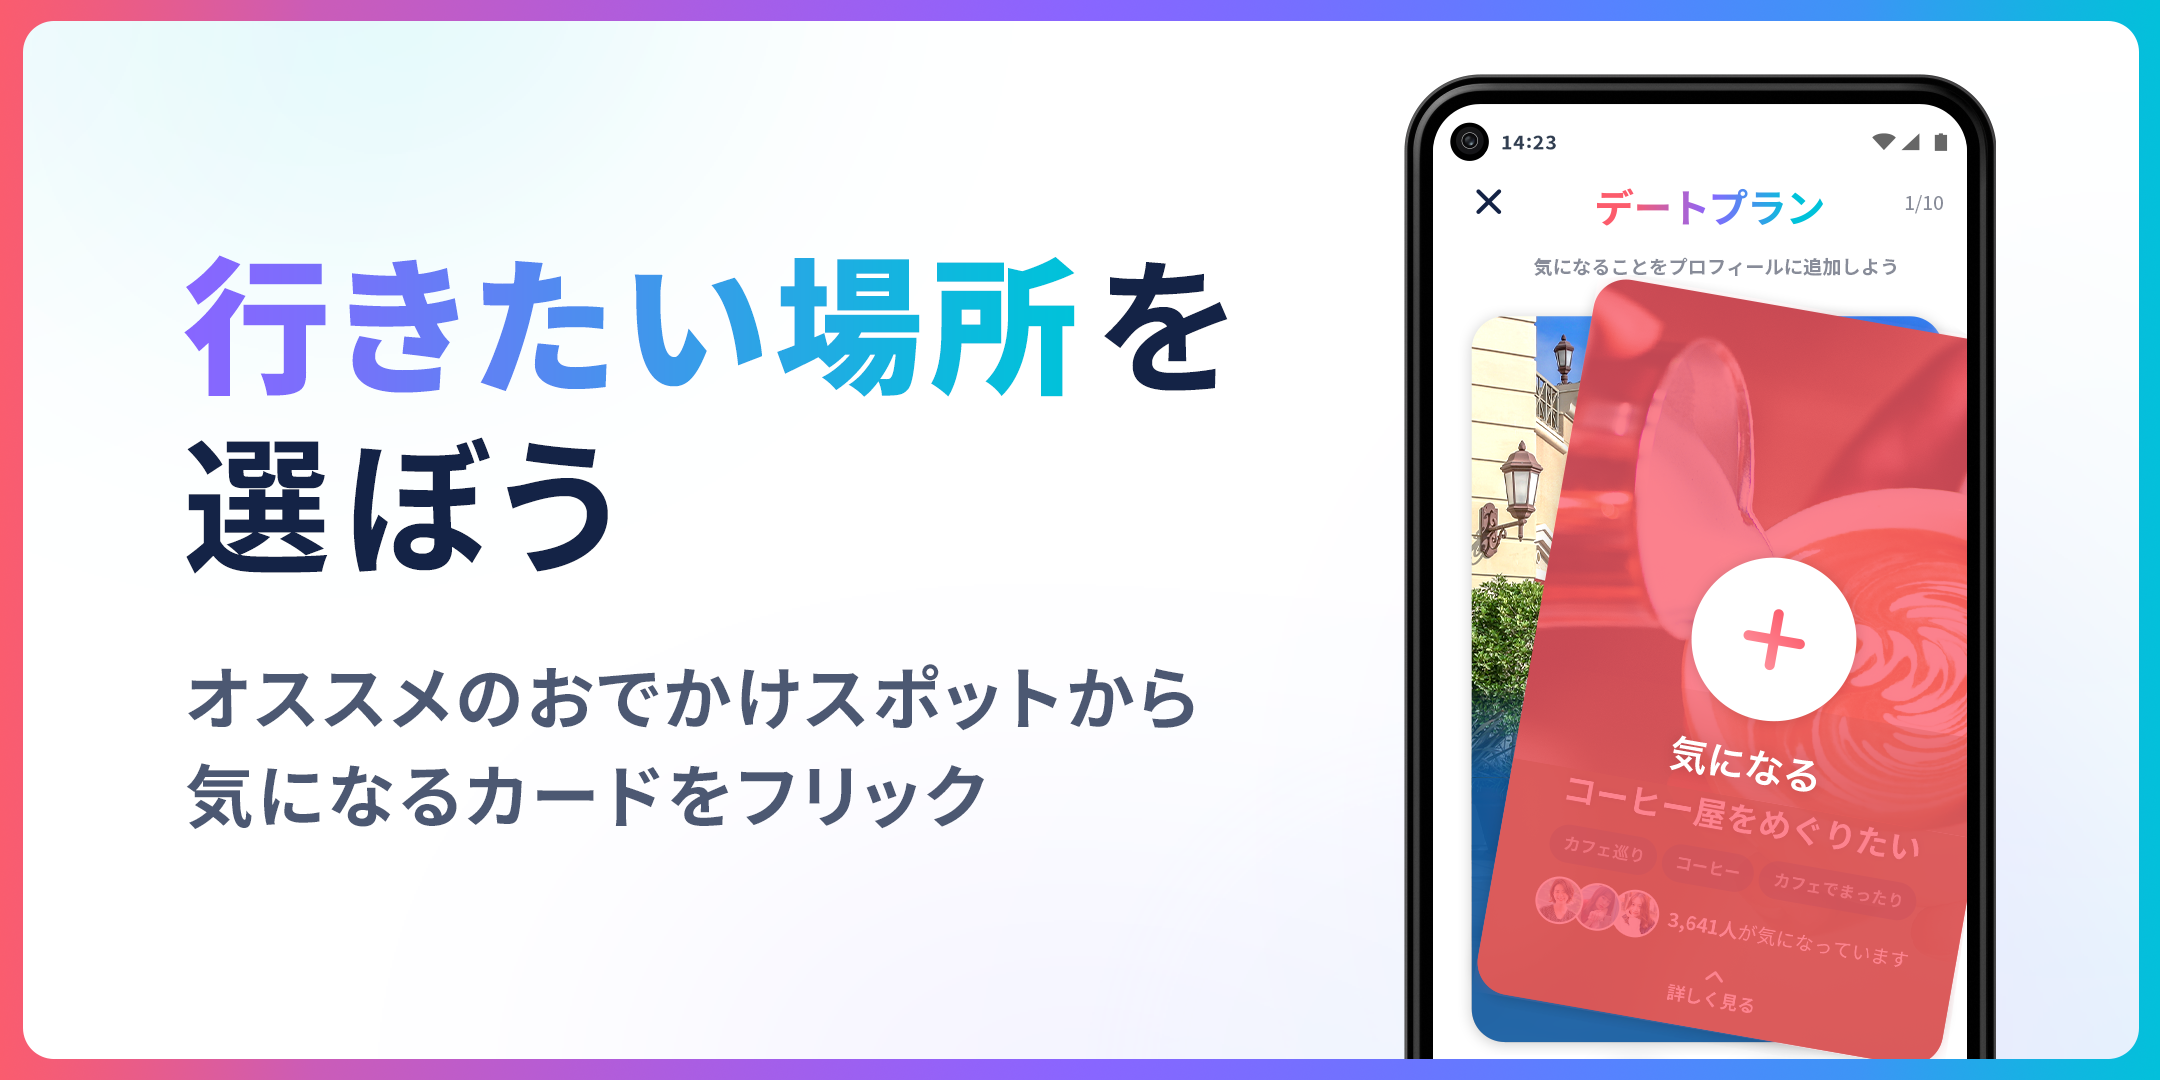 Android application タップル-マッチングアプリで恋活・婚活・出会い探し screenshort